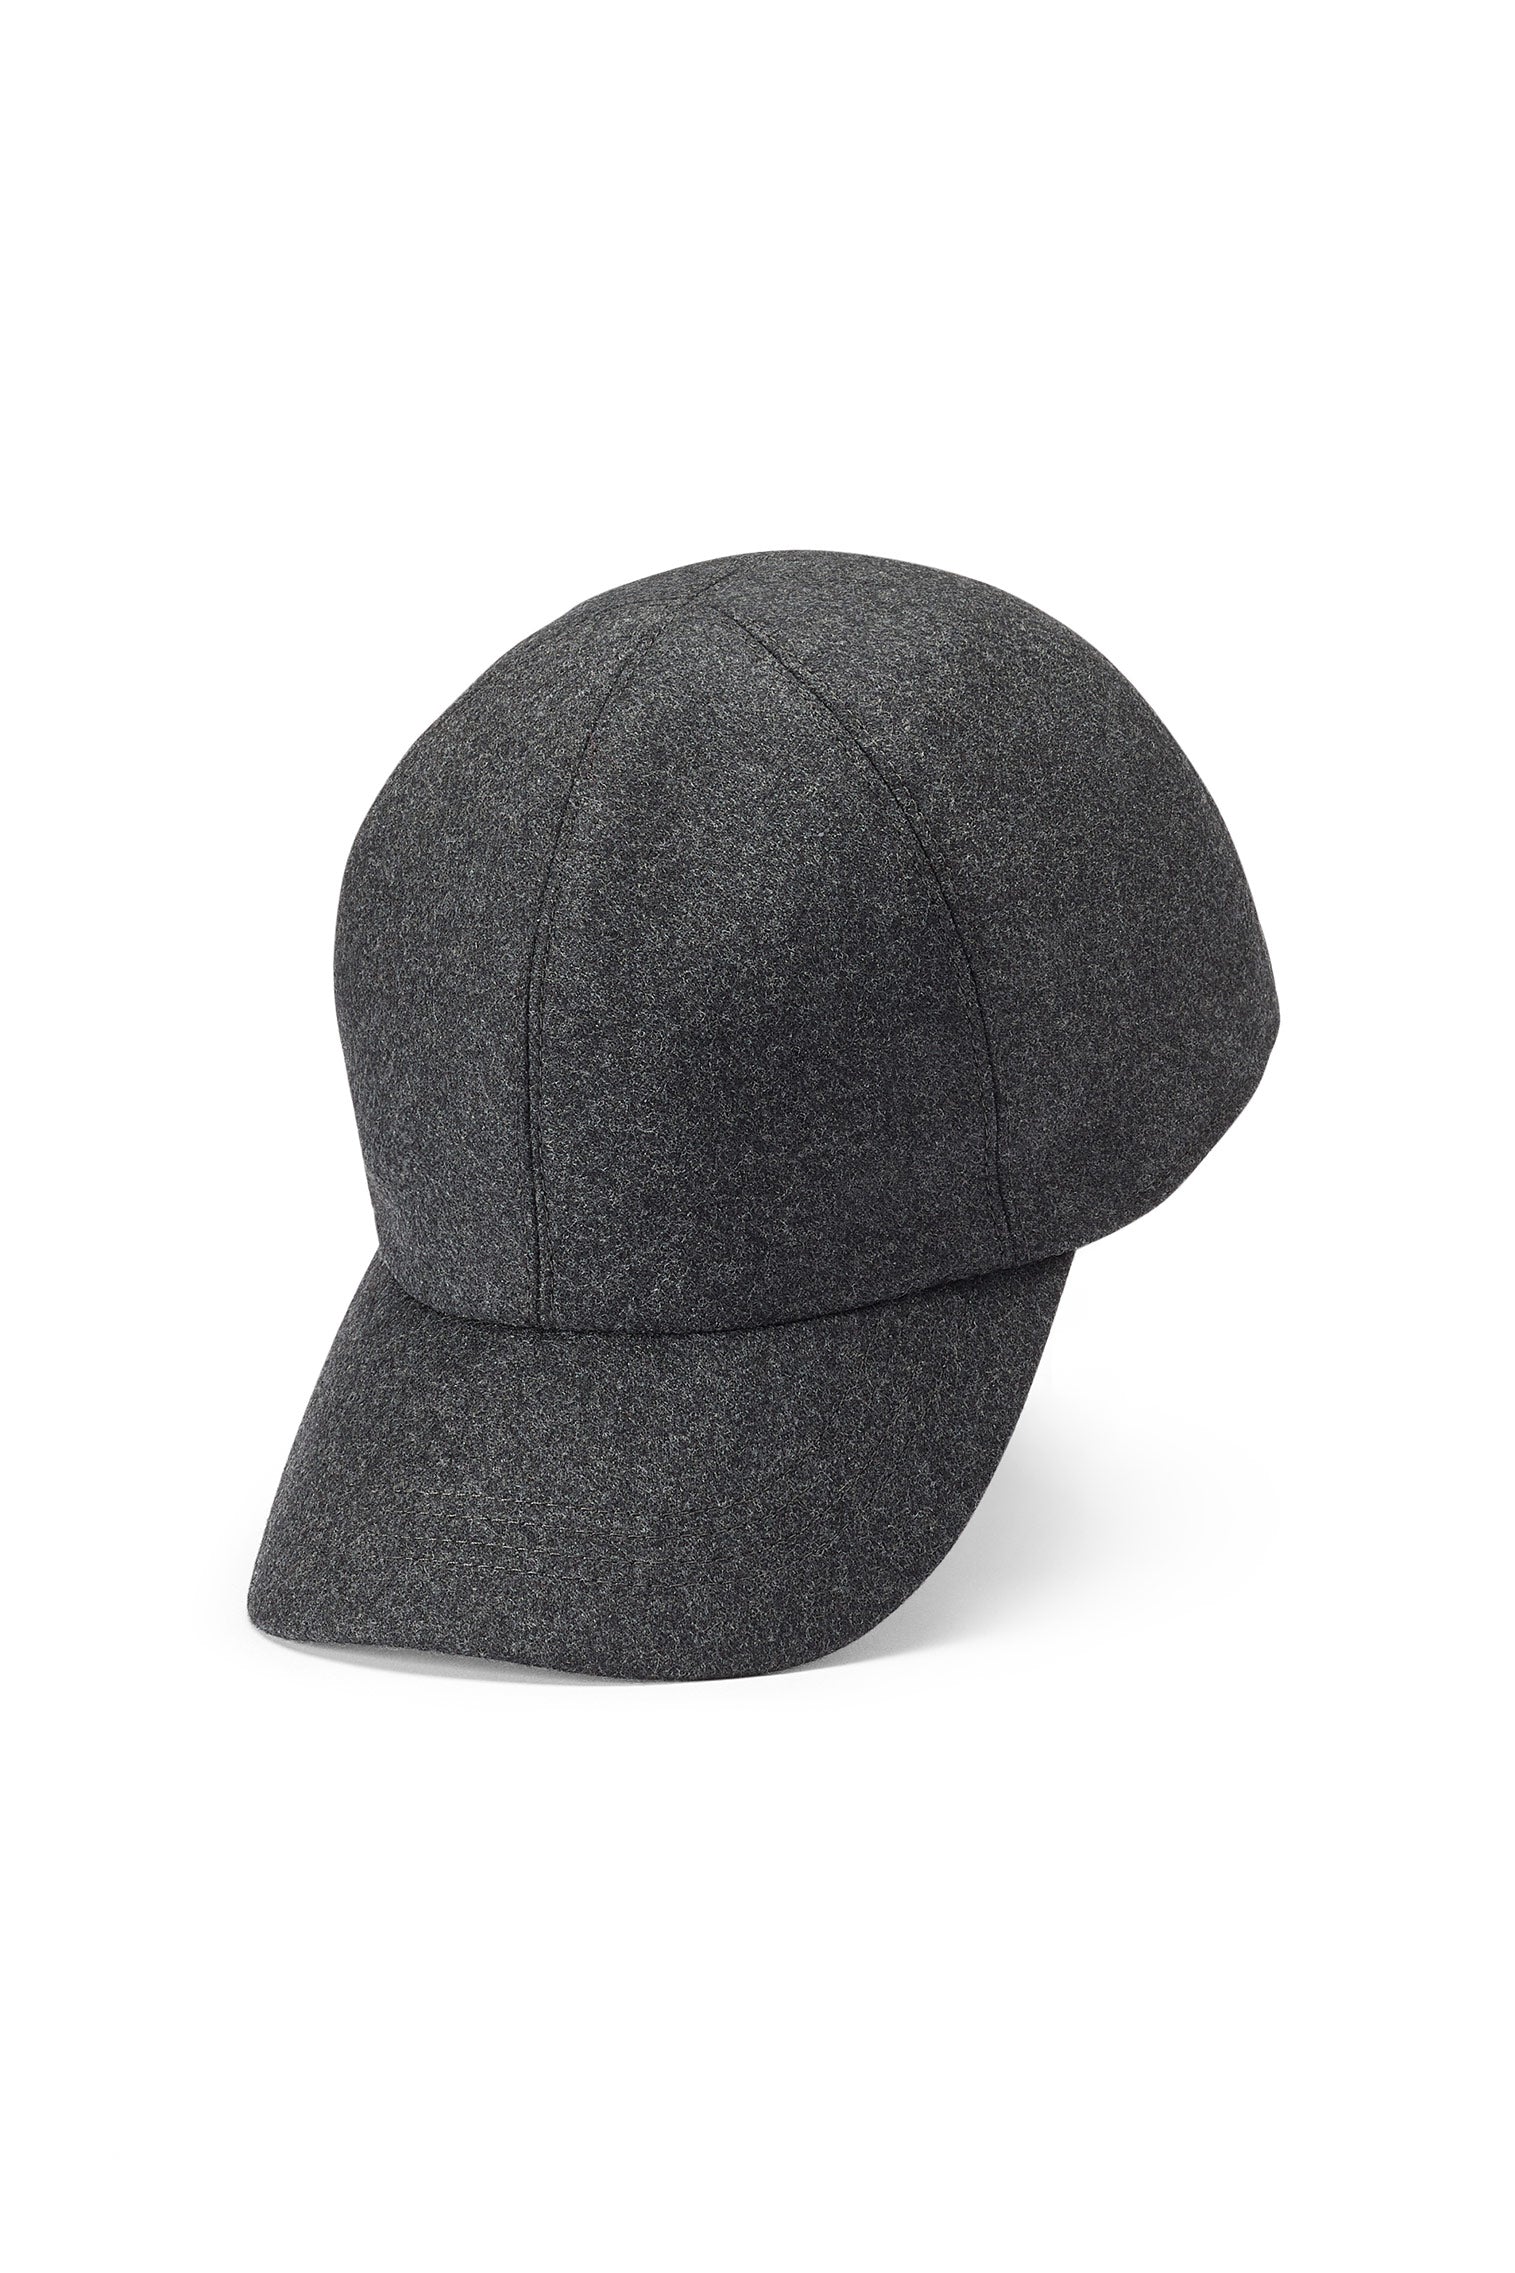 Visby Wool Baseball Cap - All Ready to Wear - Lock & Co. Hatters London UK